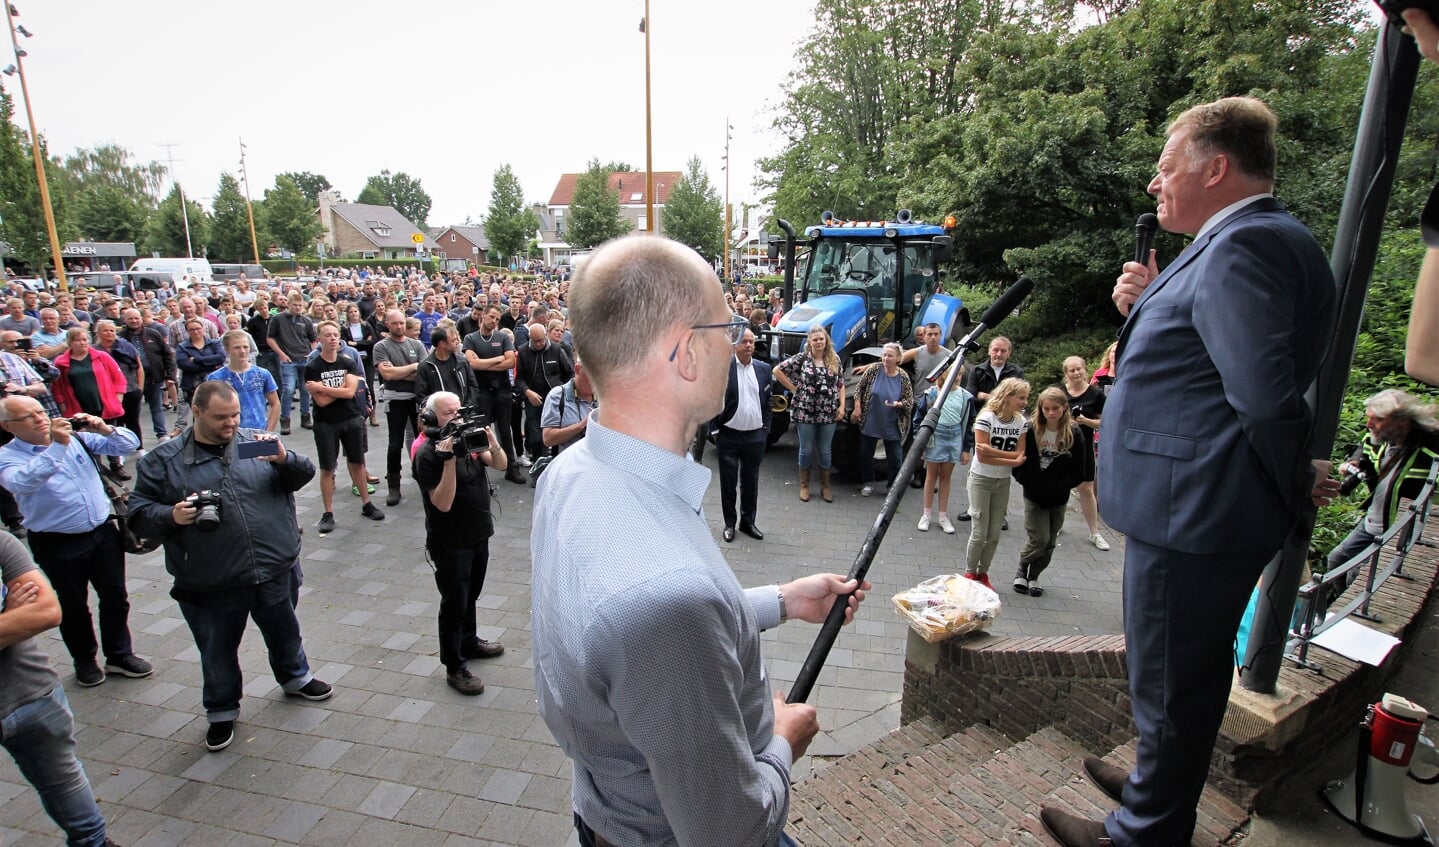 • Burgemeester Roel Cazemier spreekt de boeren toe vanuit de muziektent in Ouderkerk aan den IJssel. 